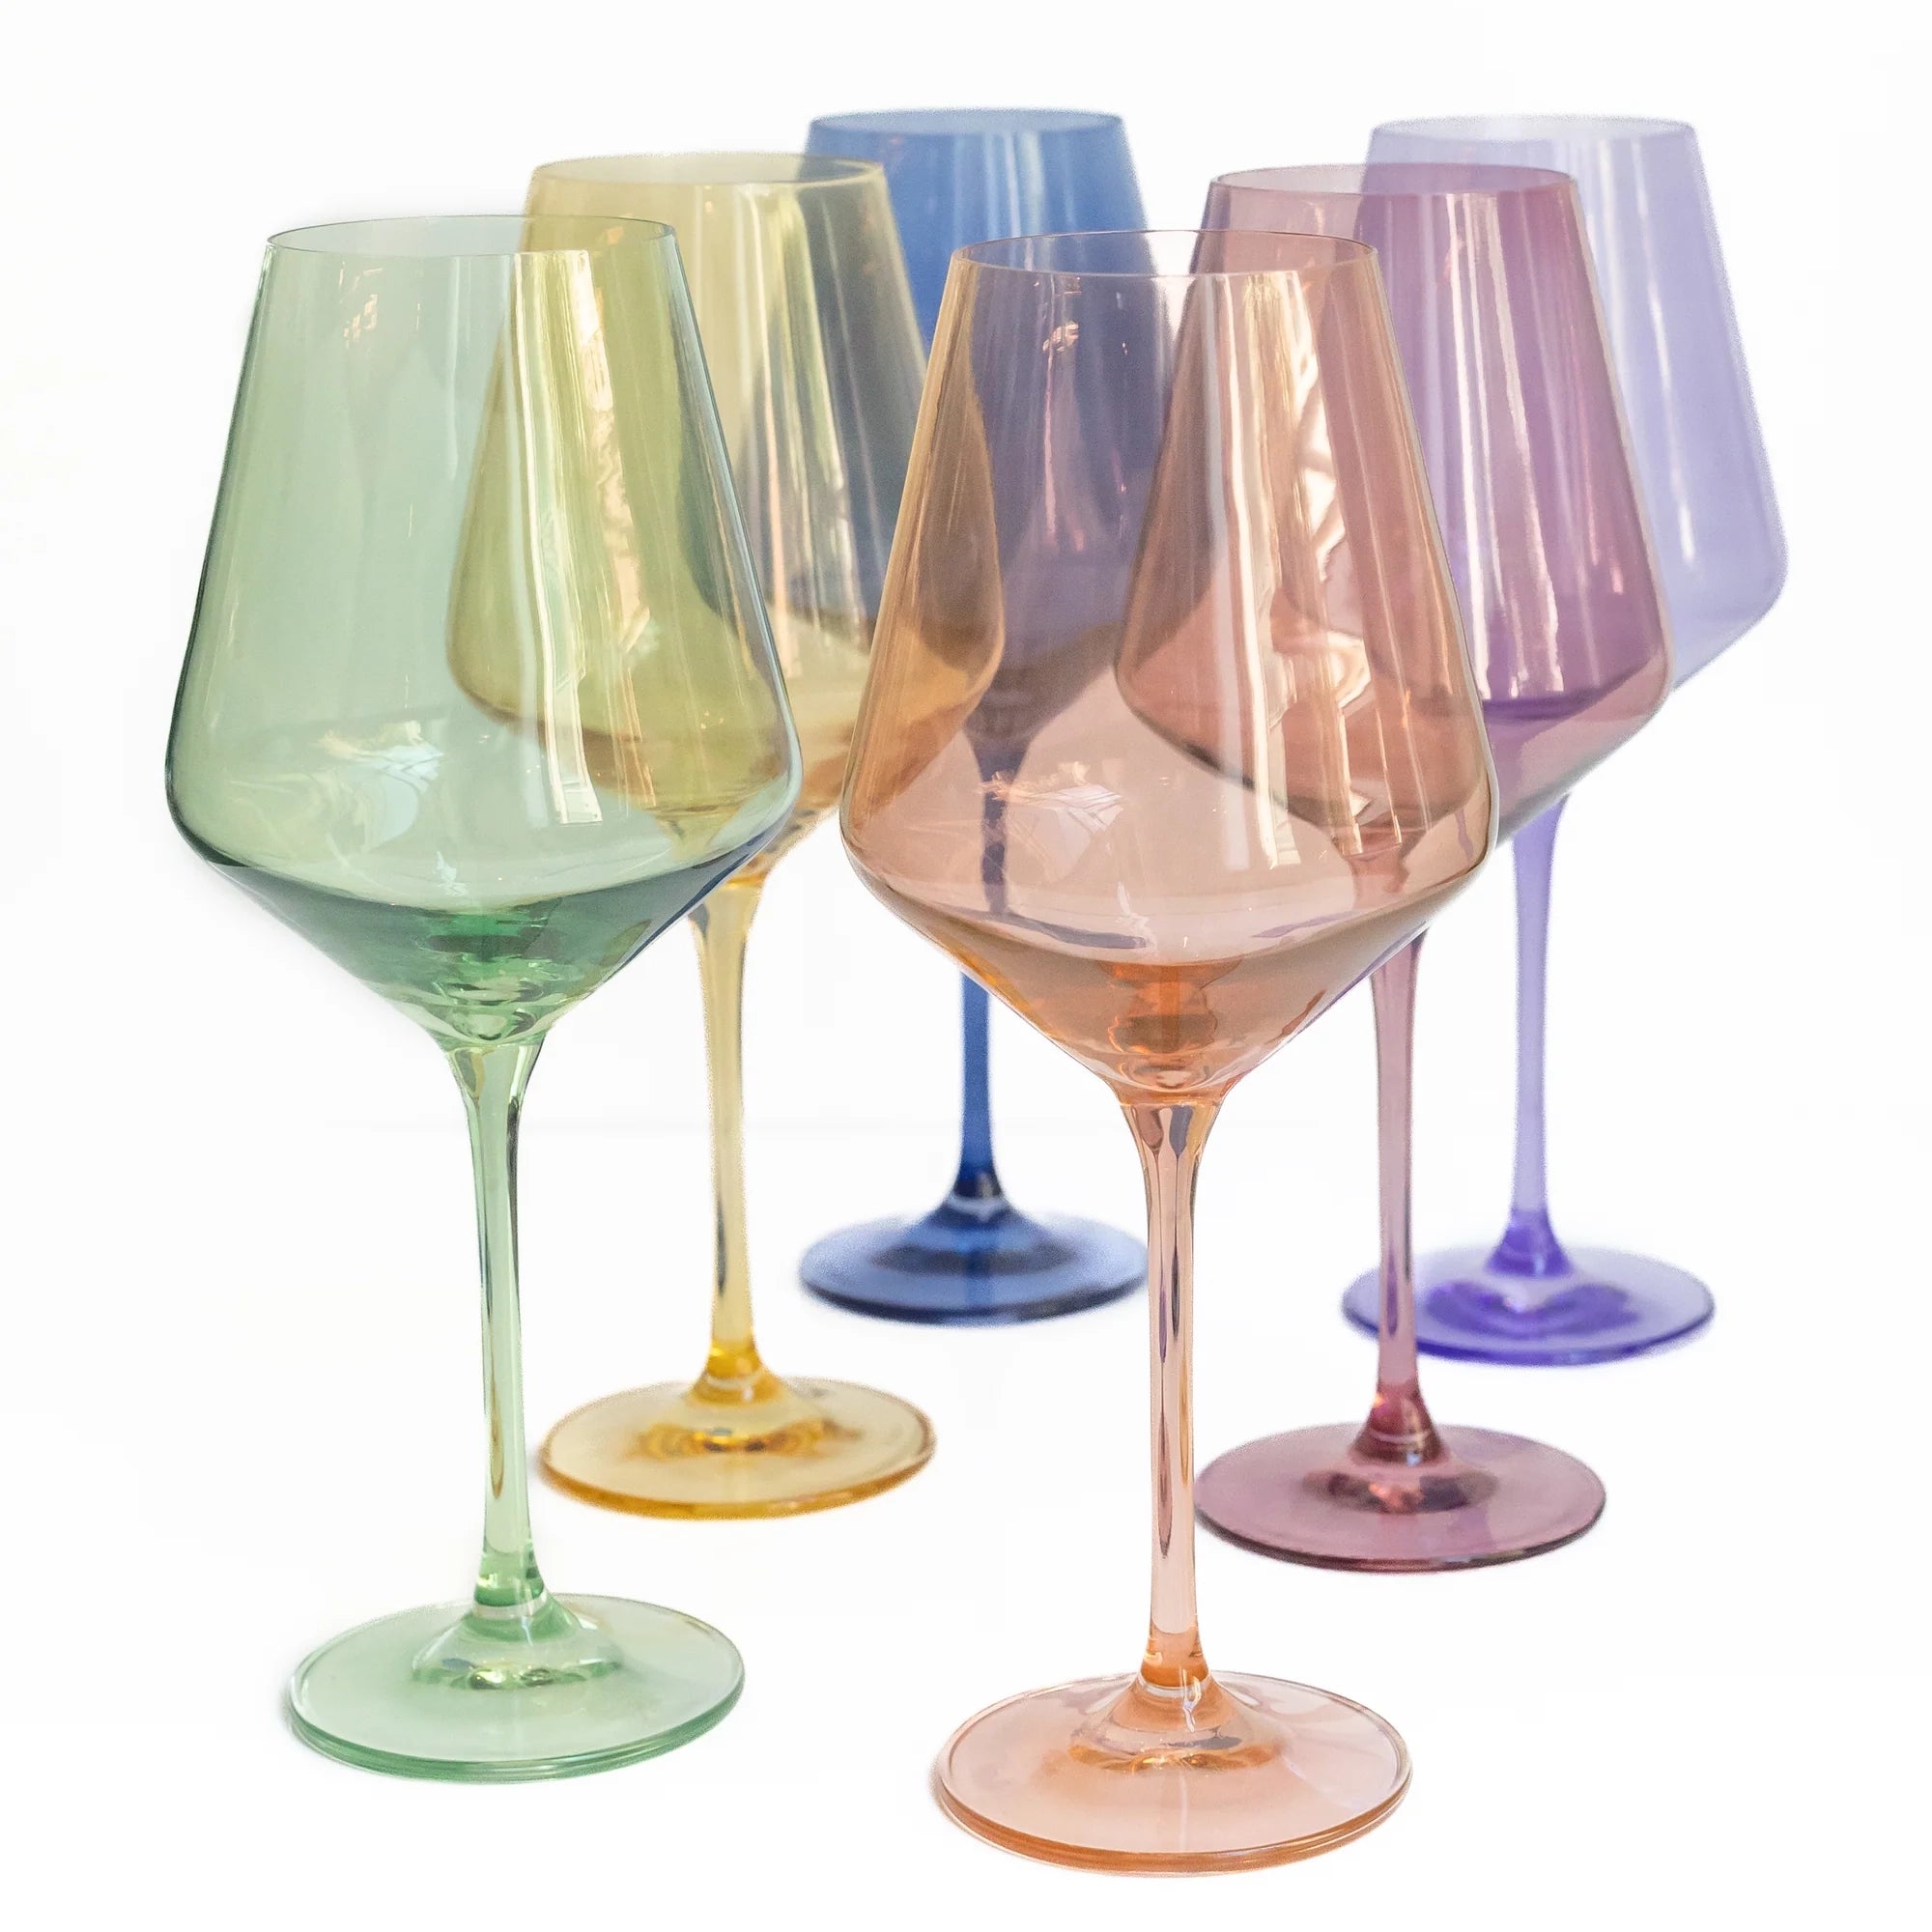 http://neighborlyshop.com/cdn/shop/files/pastel-set-6-stemware-wine-glasses-estelle.webp?v=1693949584